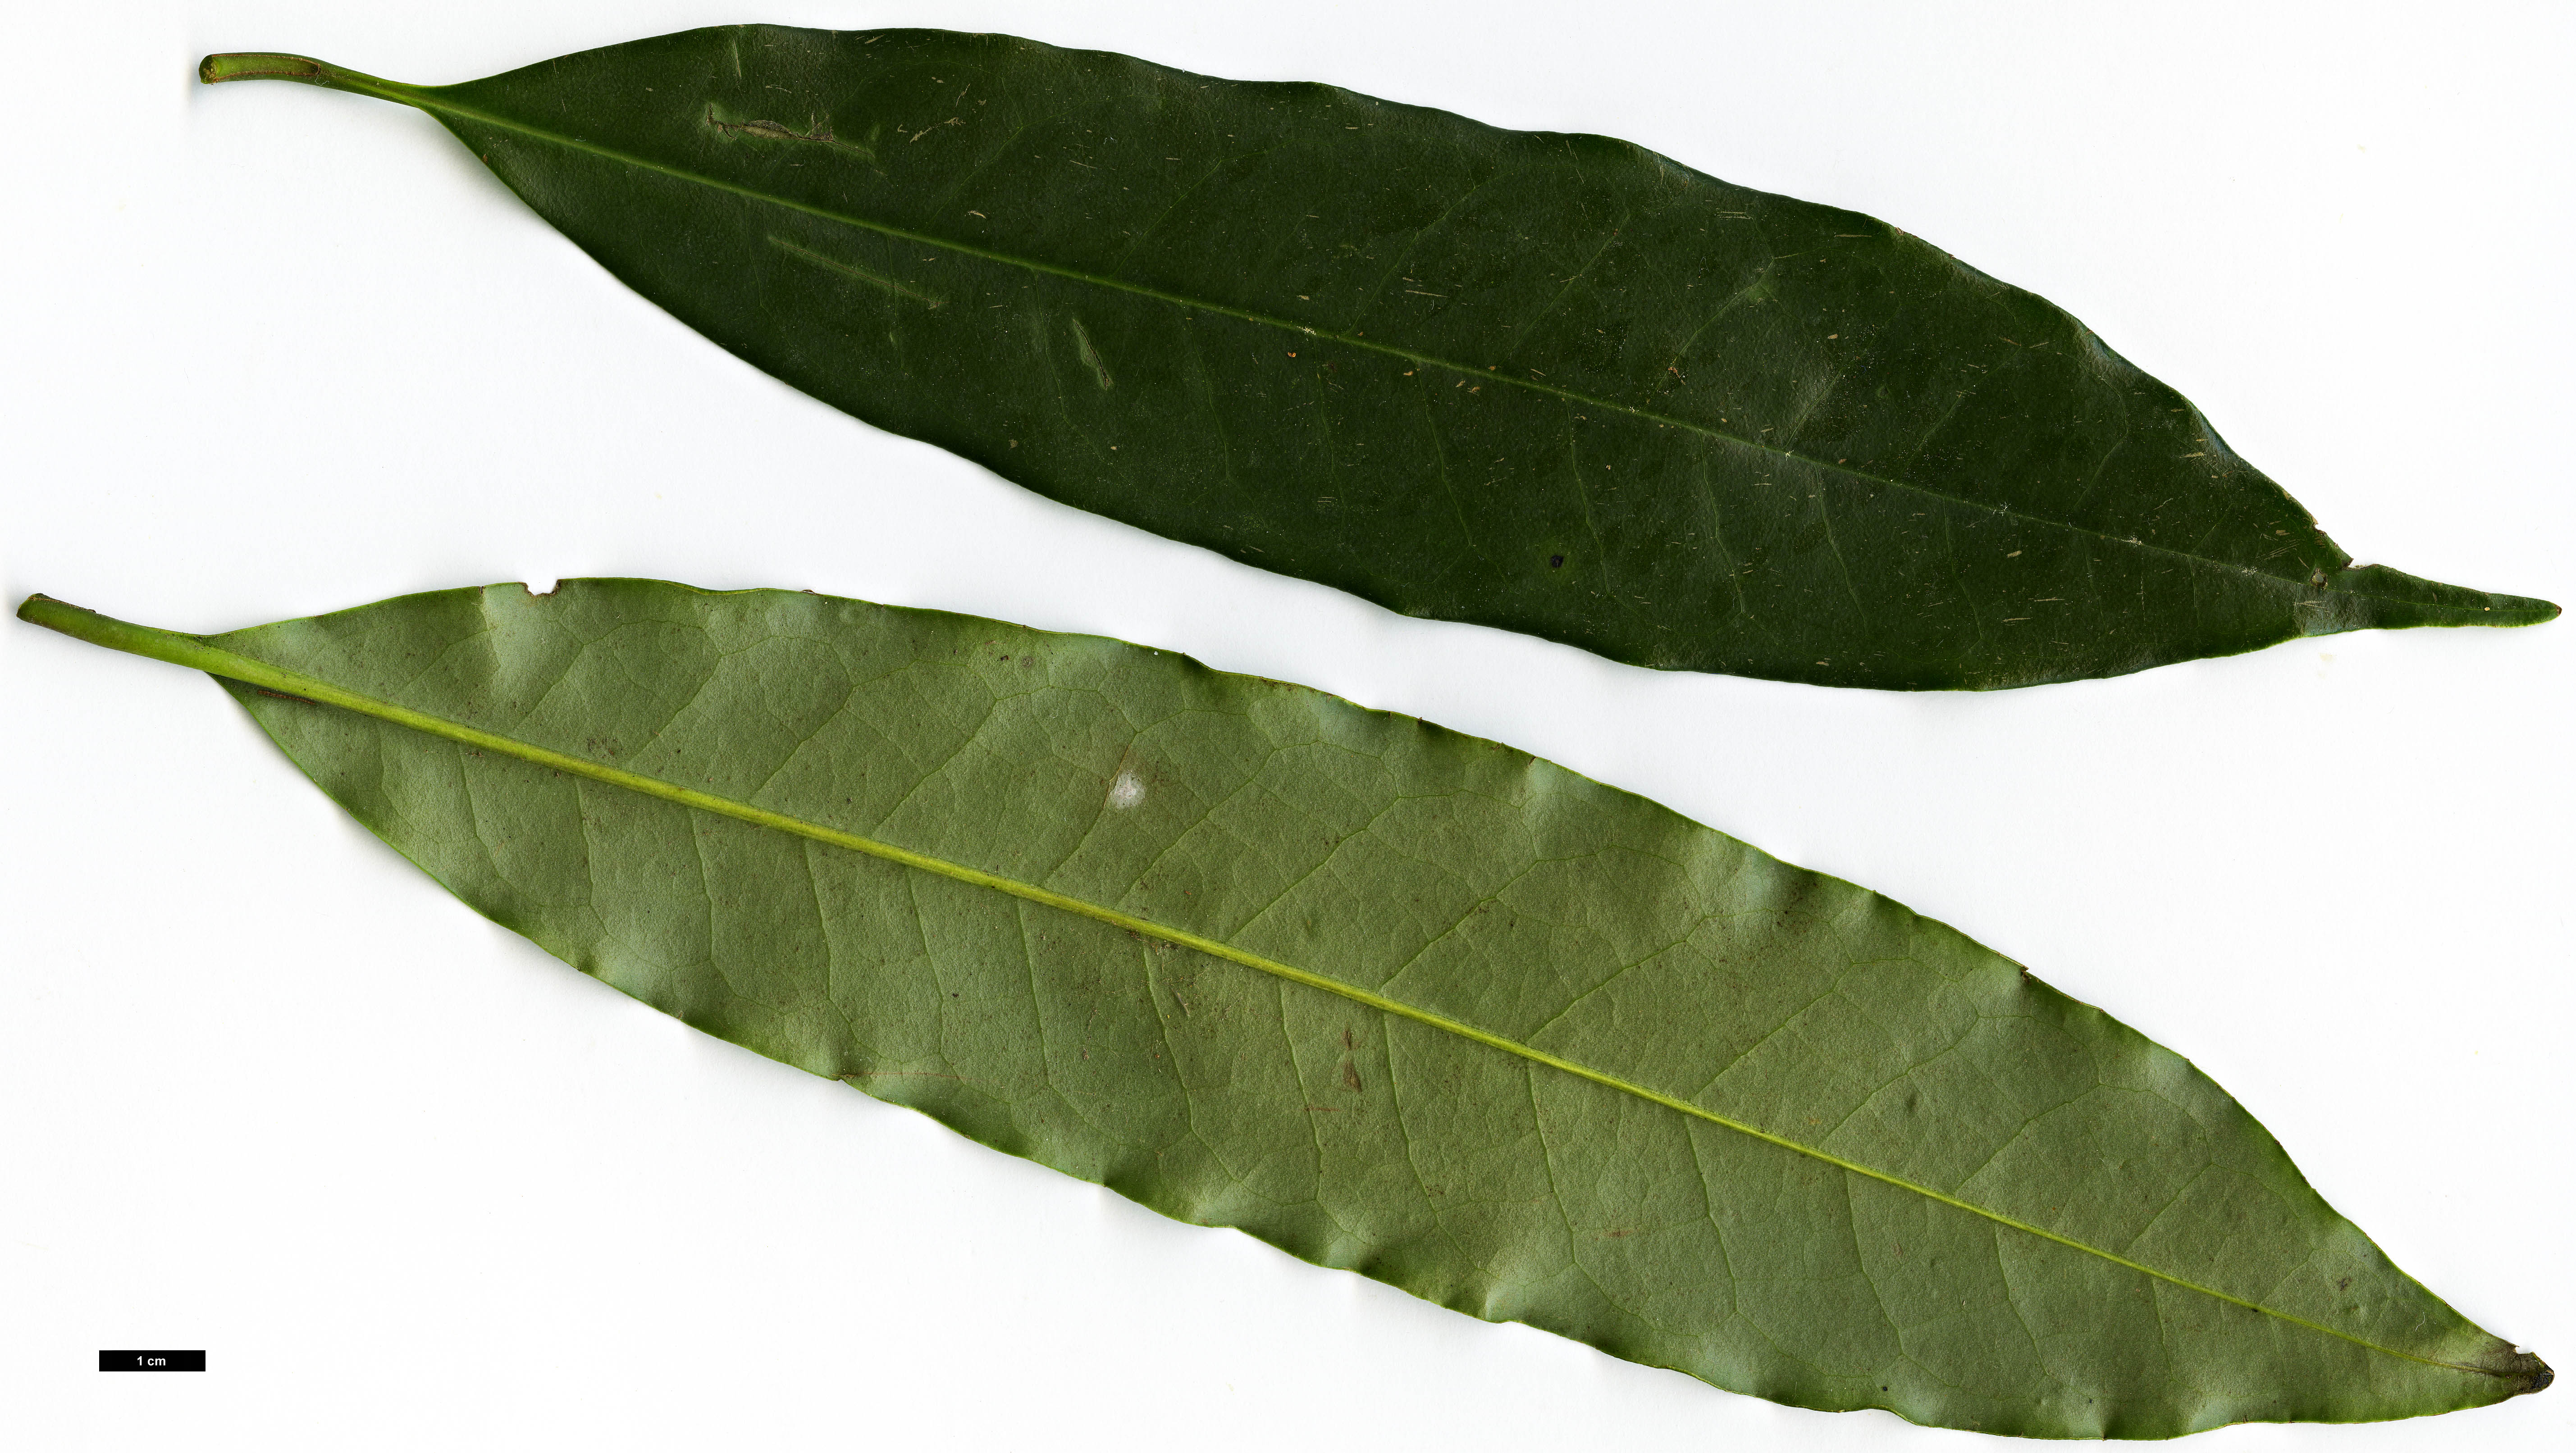 High resolution image: Family: Magnoliaceae - Genus: Magnolia - Taxon: insignis